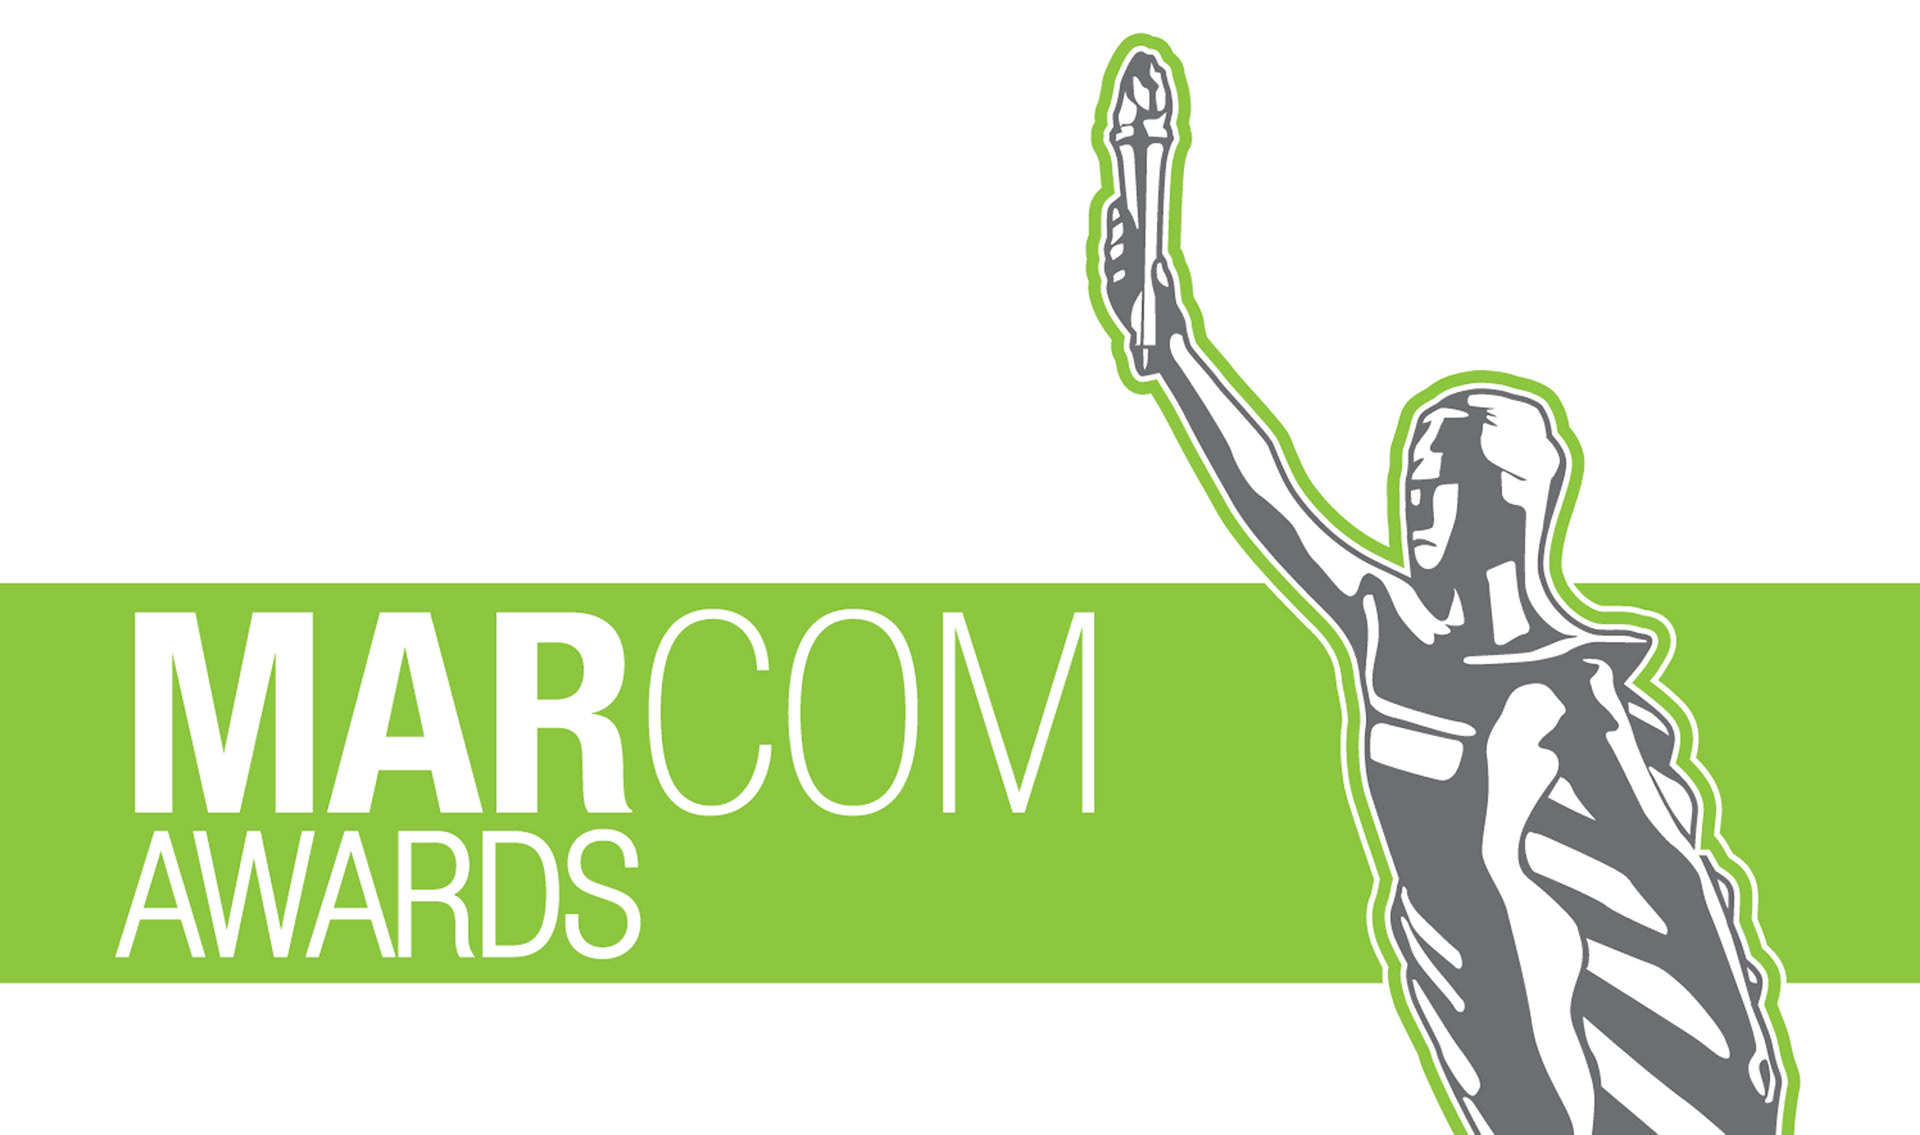 Годовой отчет РКС получил высшую награду на конкурсе MarCom Awards